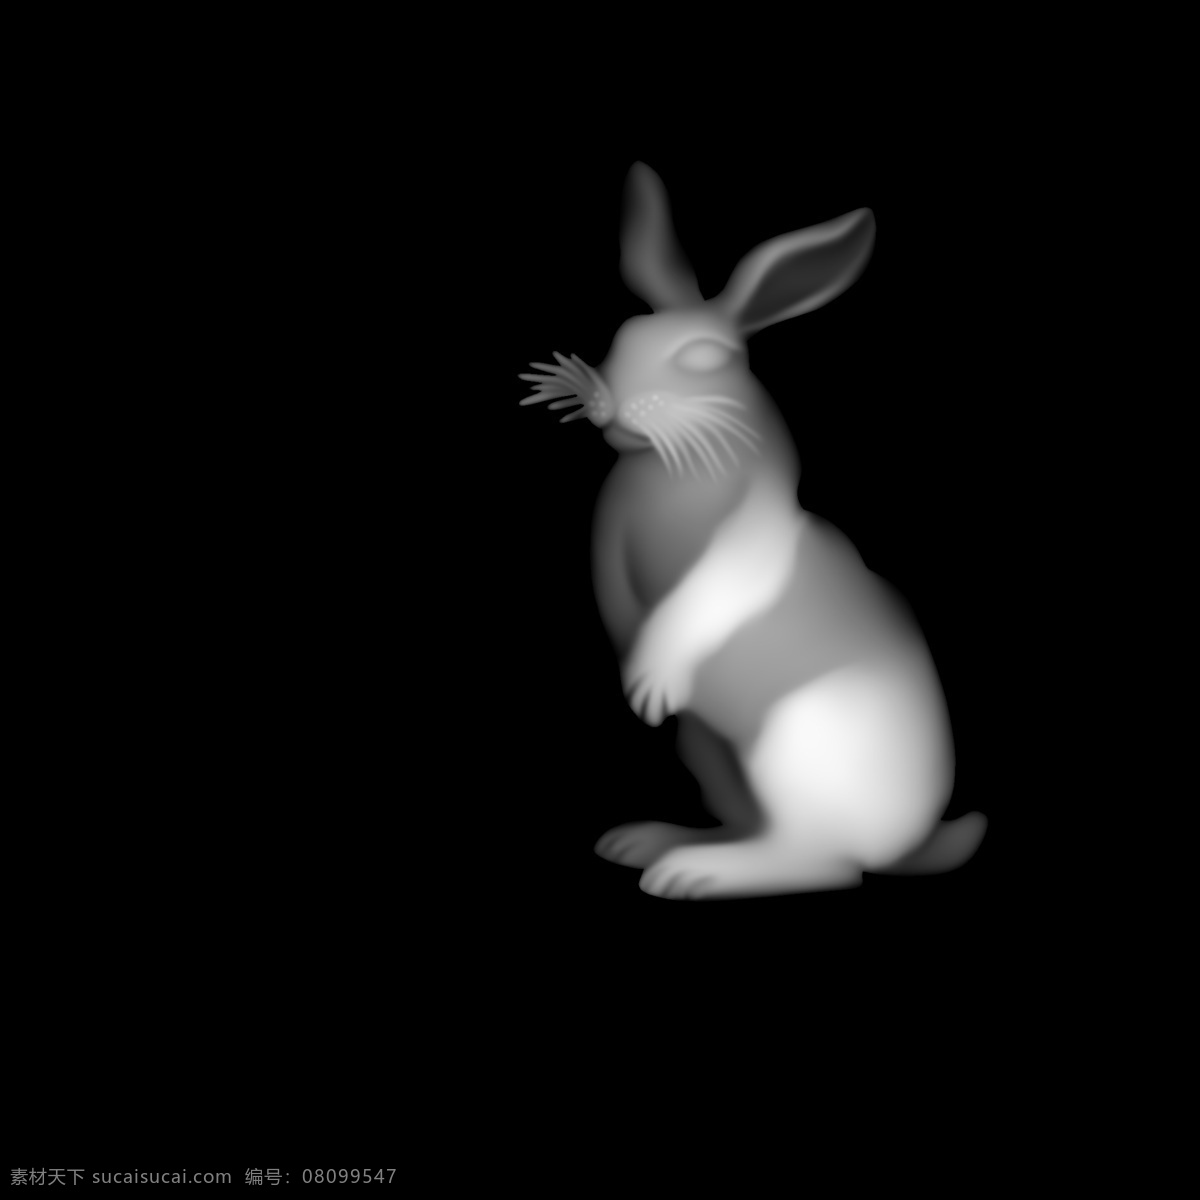 兔子 灰度 图 十二生肖 bmp 兔子灰度图 十二生肖灰图 bmp灰度图 大白兔灰度图 灰度图图库